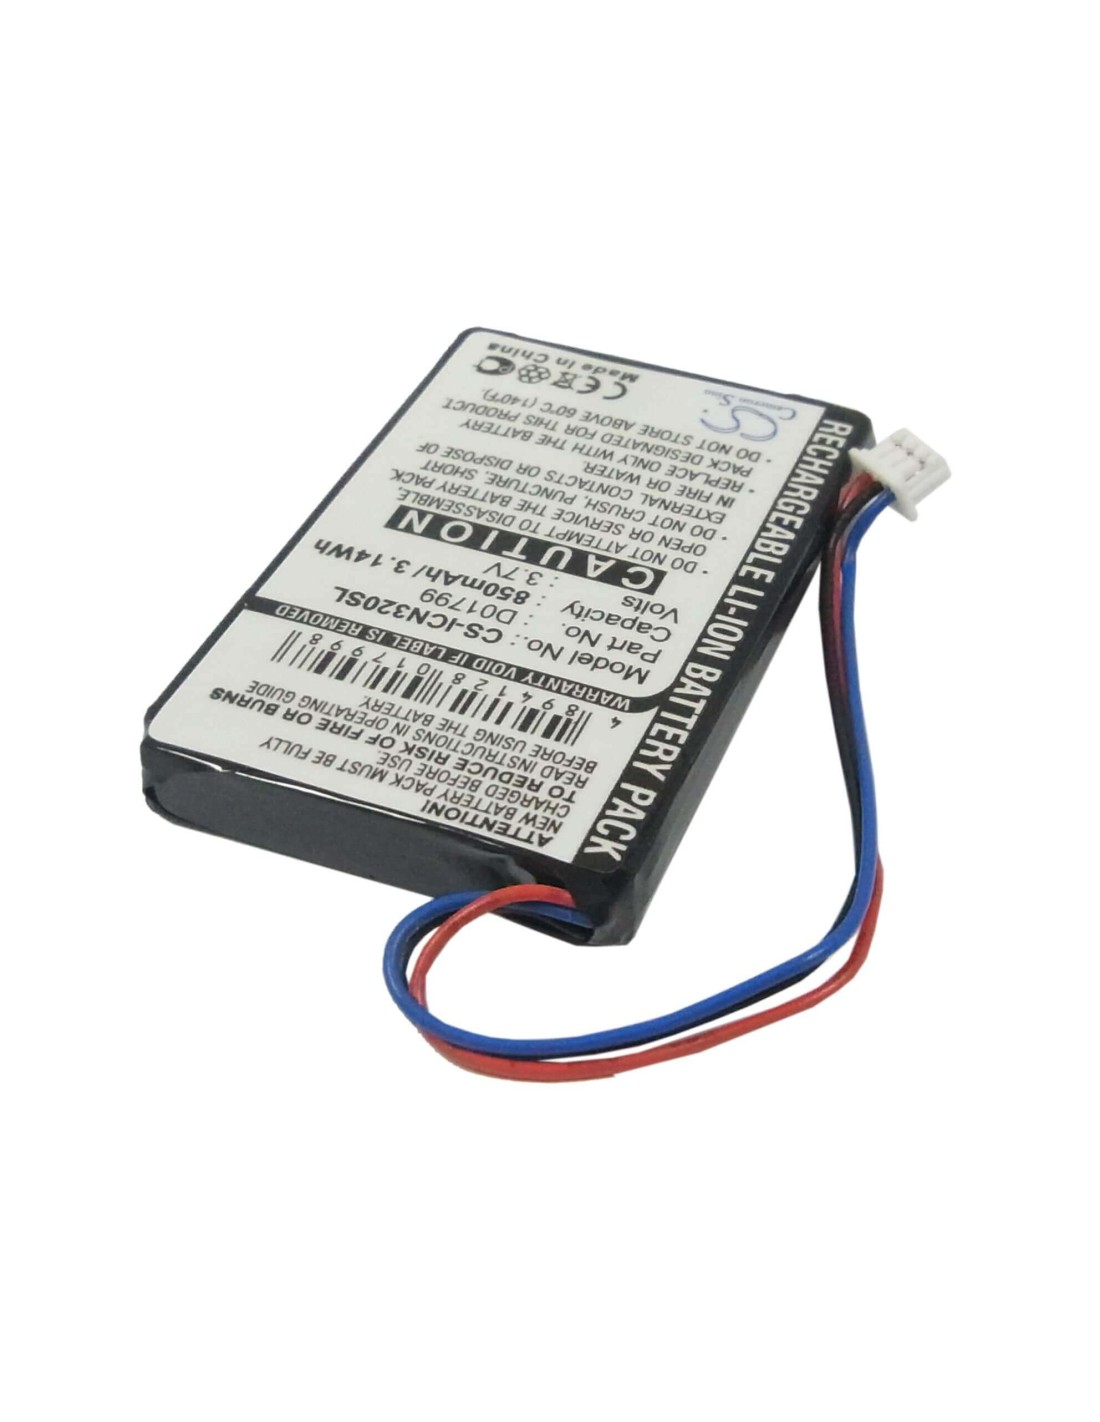 Battery for Navman Icn320, Icn330, 3.7V, 850mAh - 3.15Wh